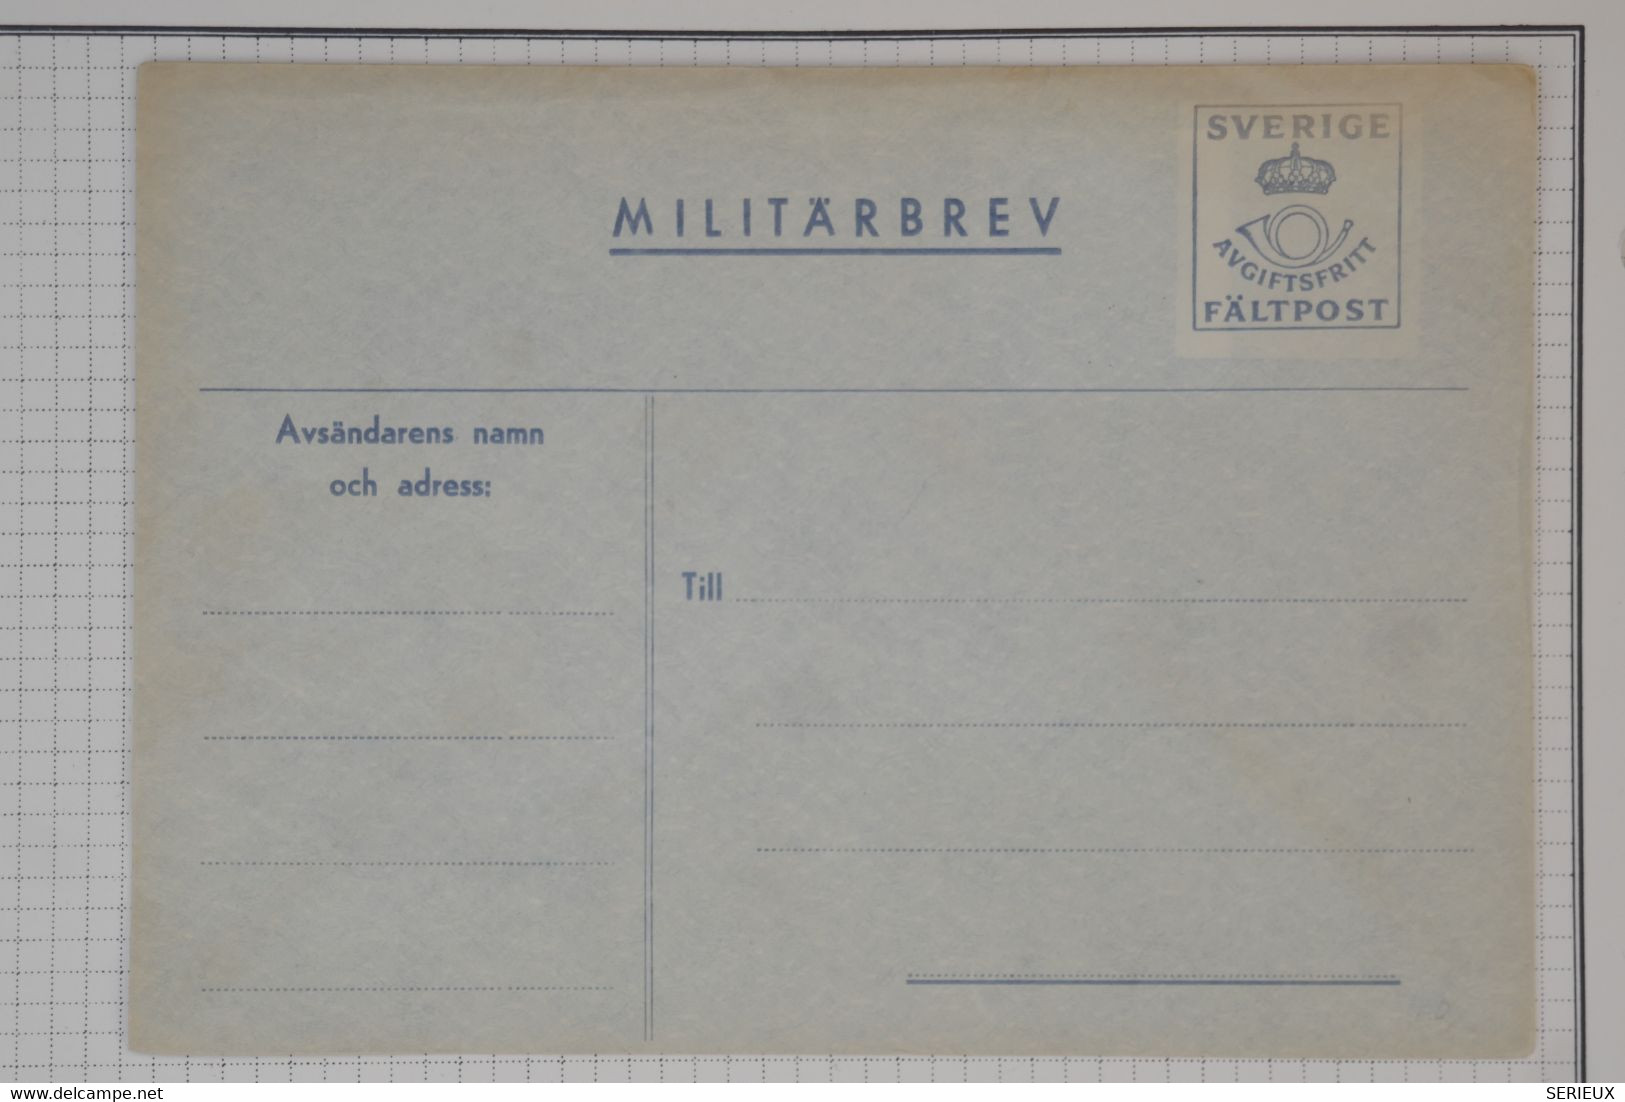 BC1 SVERIGE  BELLE LETTRE FALPOST  1944 MILITARBREV+++   NON VOYAGEE  ++NEUVE + - Militaire Zegels